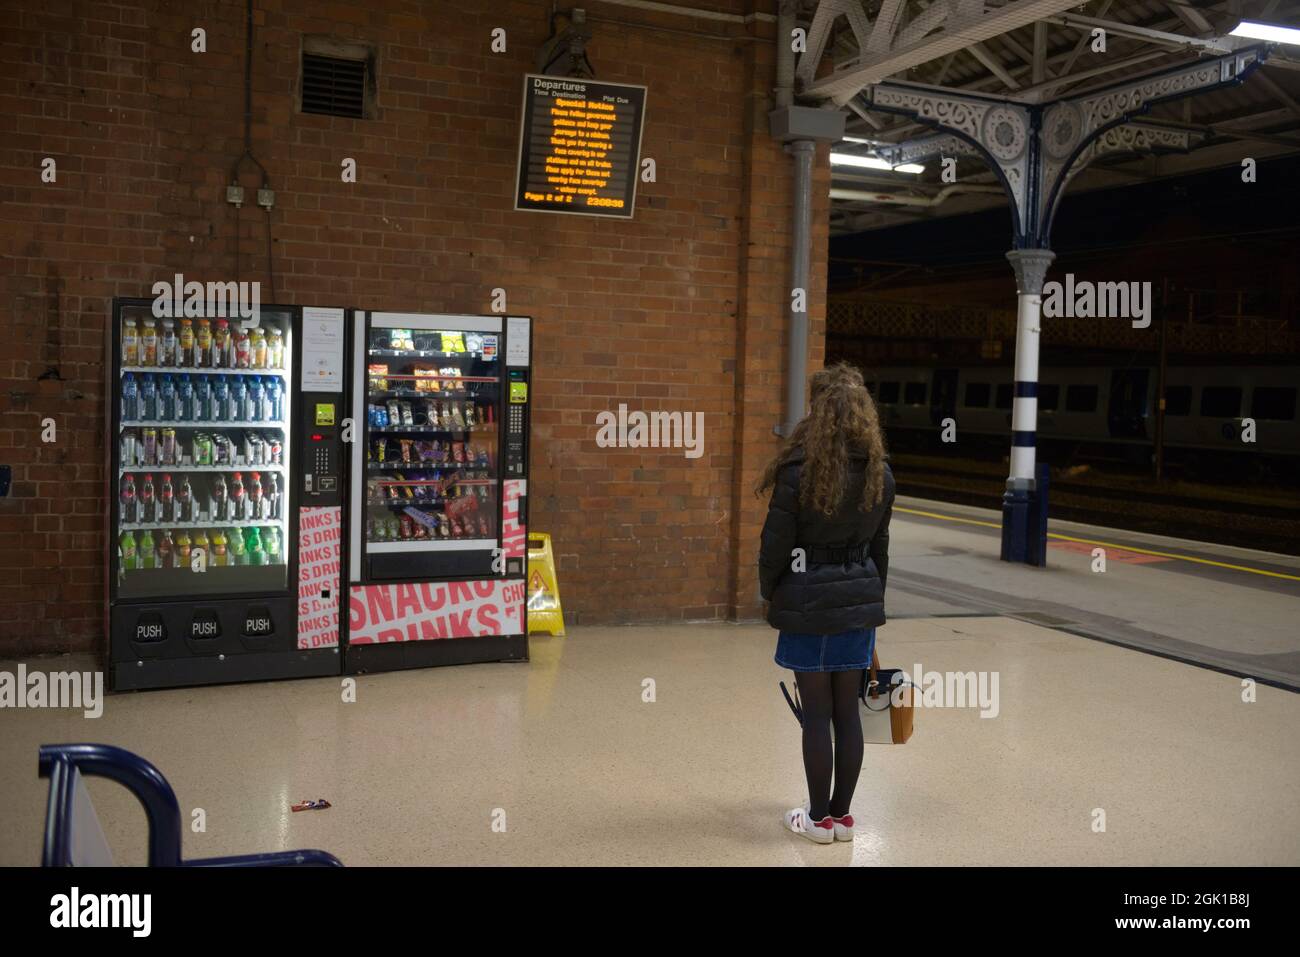 Doncaster, Royaume-Uni, 22 mai, 2021: Femme avec des cheveux longs de brunette et des vêtements d'hiver contemple qui distributeur automatique à acheter à partir de Banque D'Images